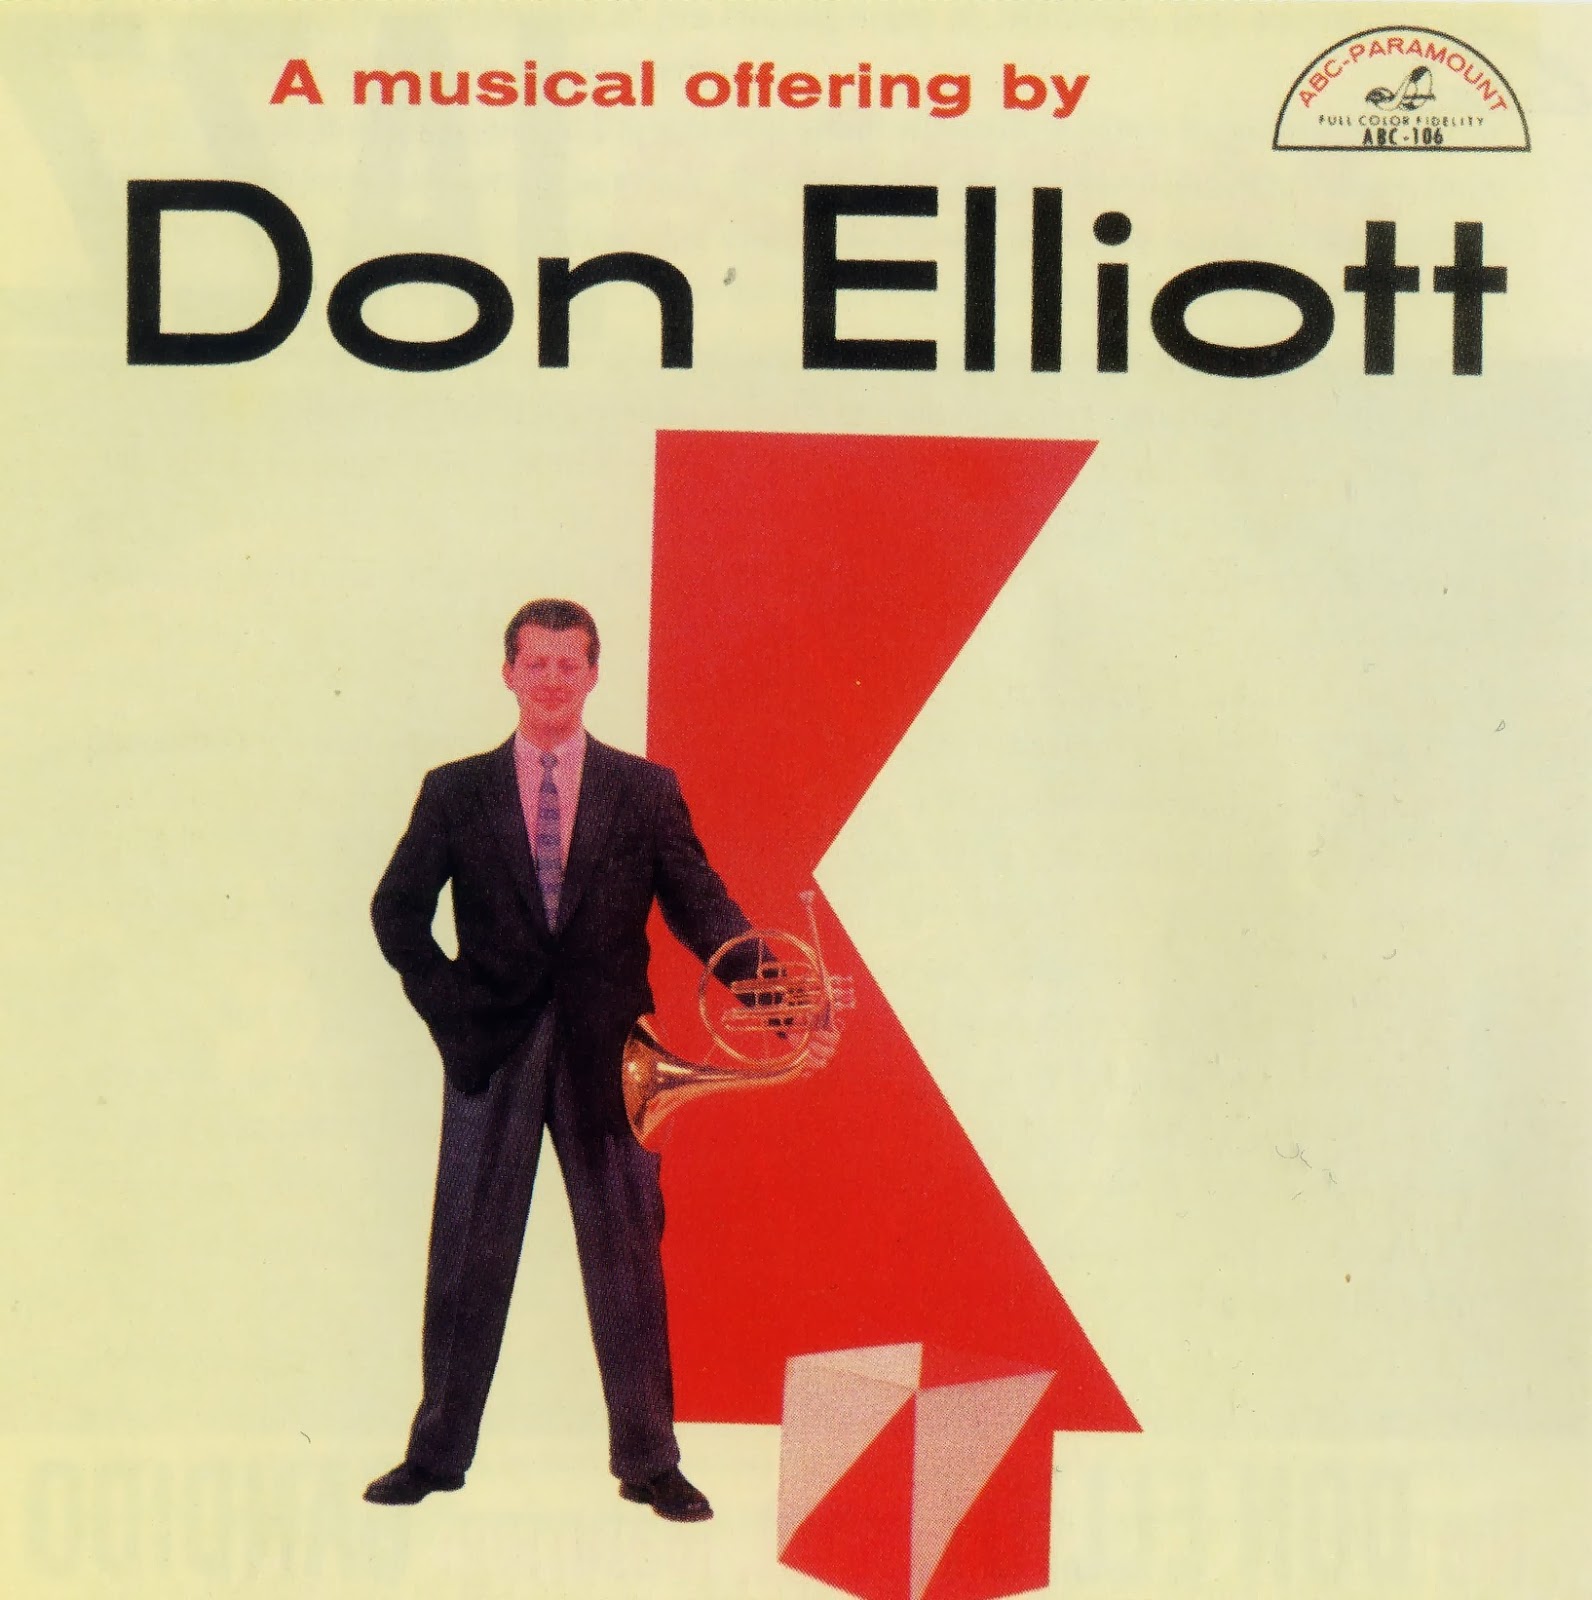 DON ELLIOTT - A Musical Offering by Don Elliott cover 